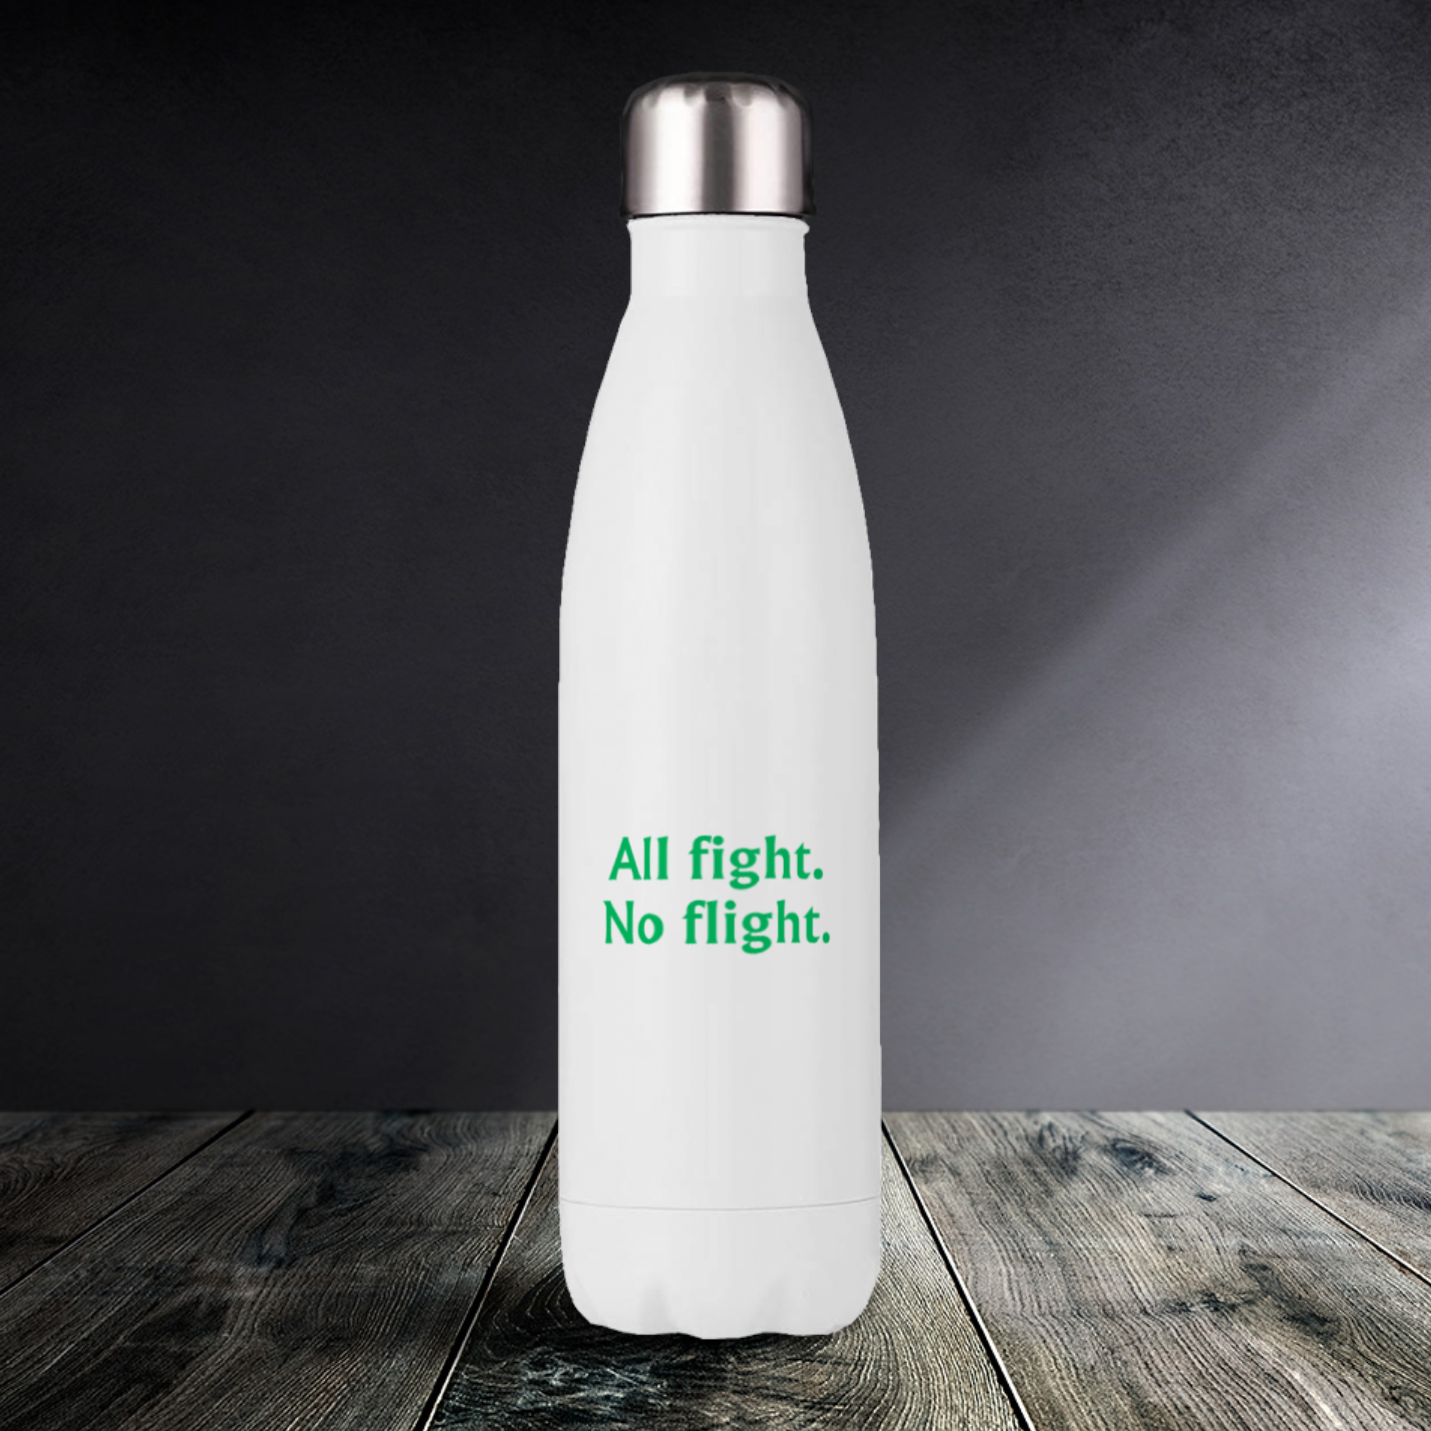 All fight, no flight - Drink Bottles